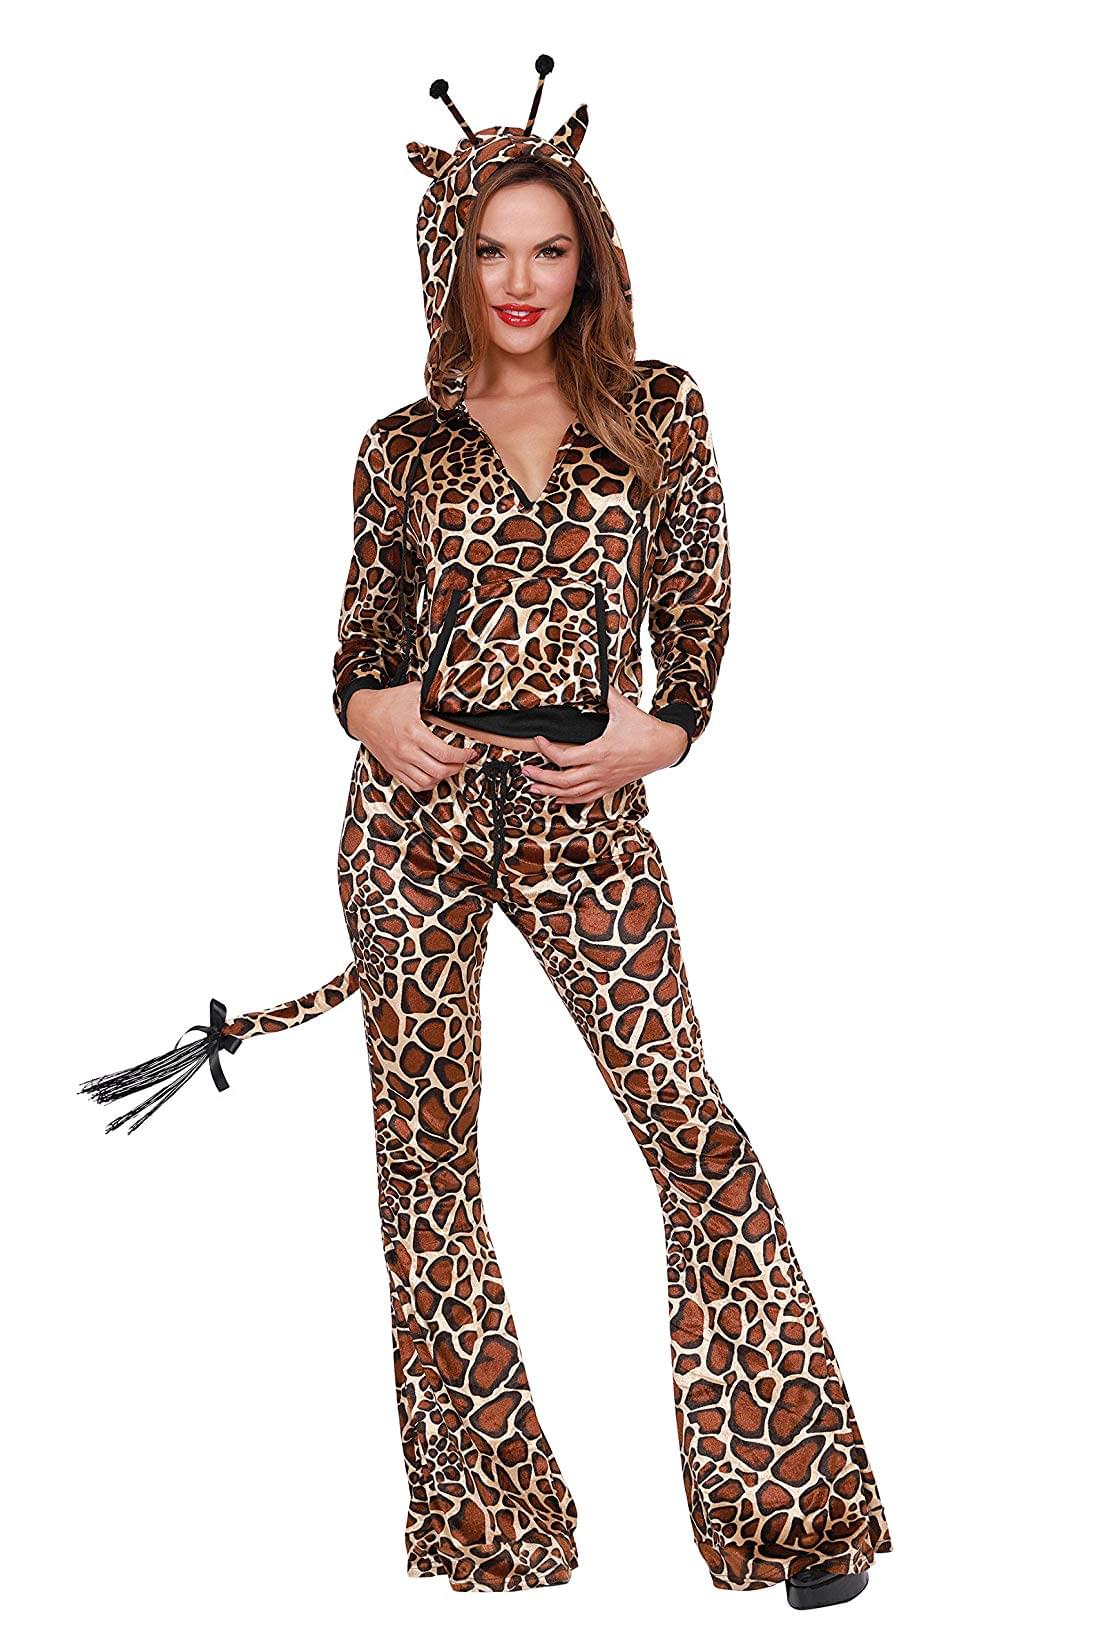 Wild Thing Giraffe Adult Women's Costume